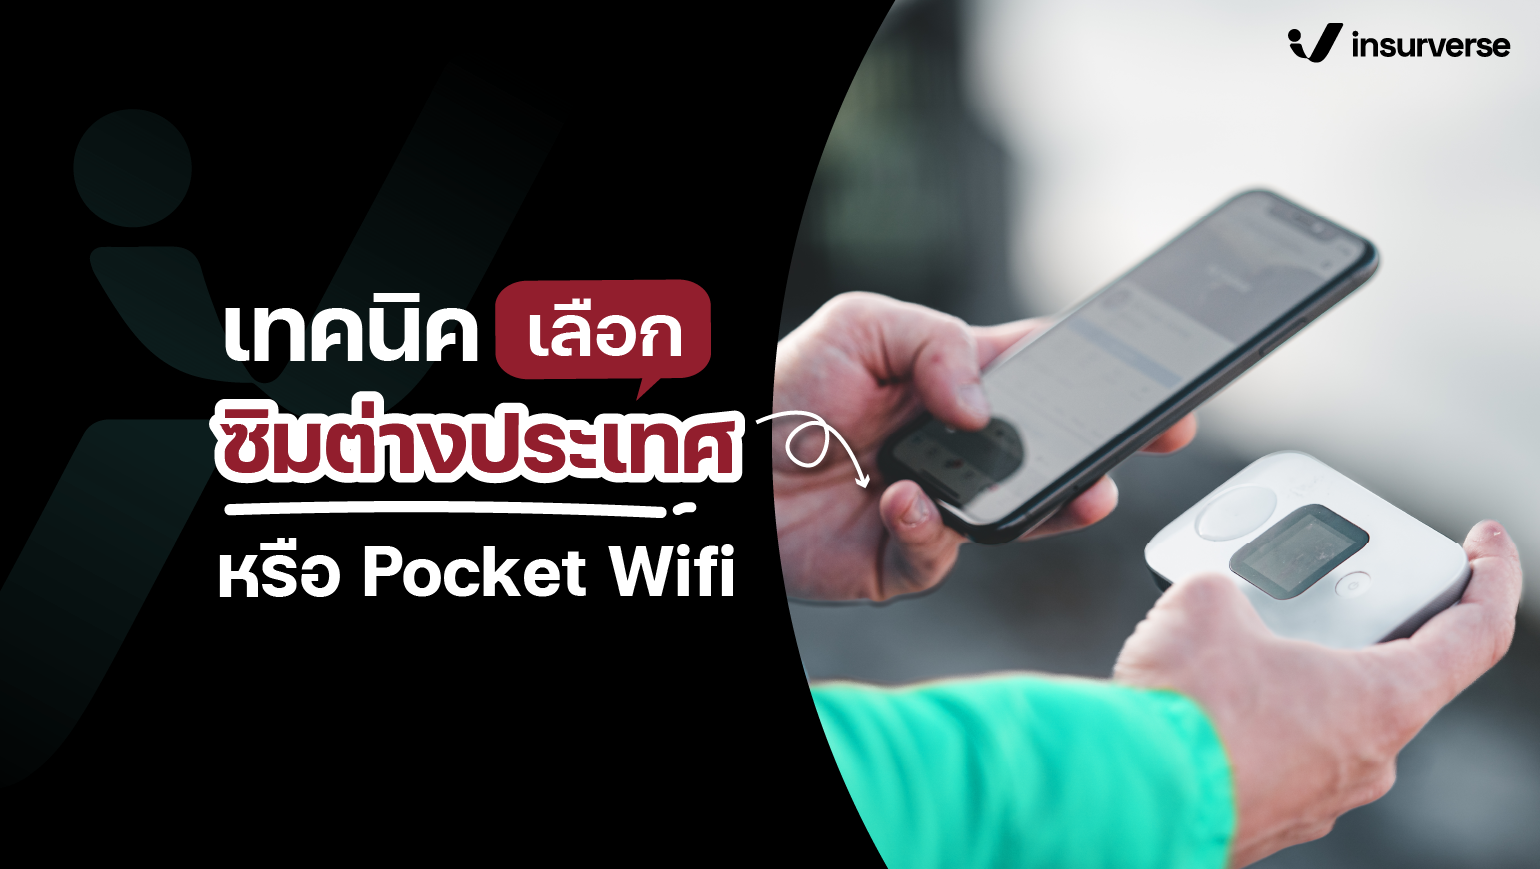 เทคนิคเลือกใช้ซิมต่างประเทศหรือ Pocket Wifi ให้มีเน็ตใช้ที่ต่างประเทศ